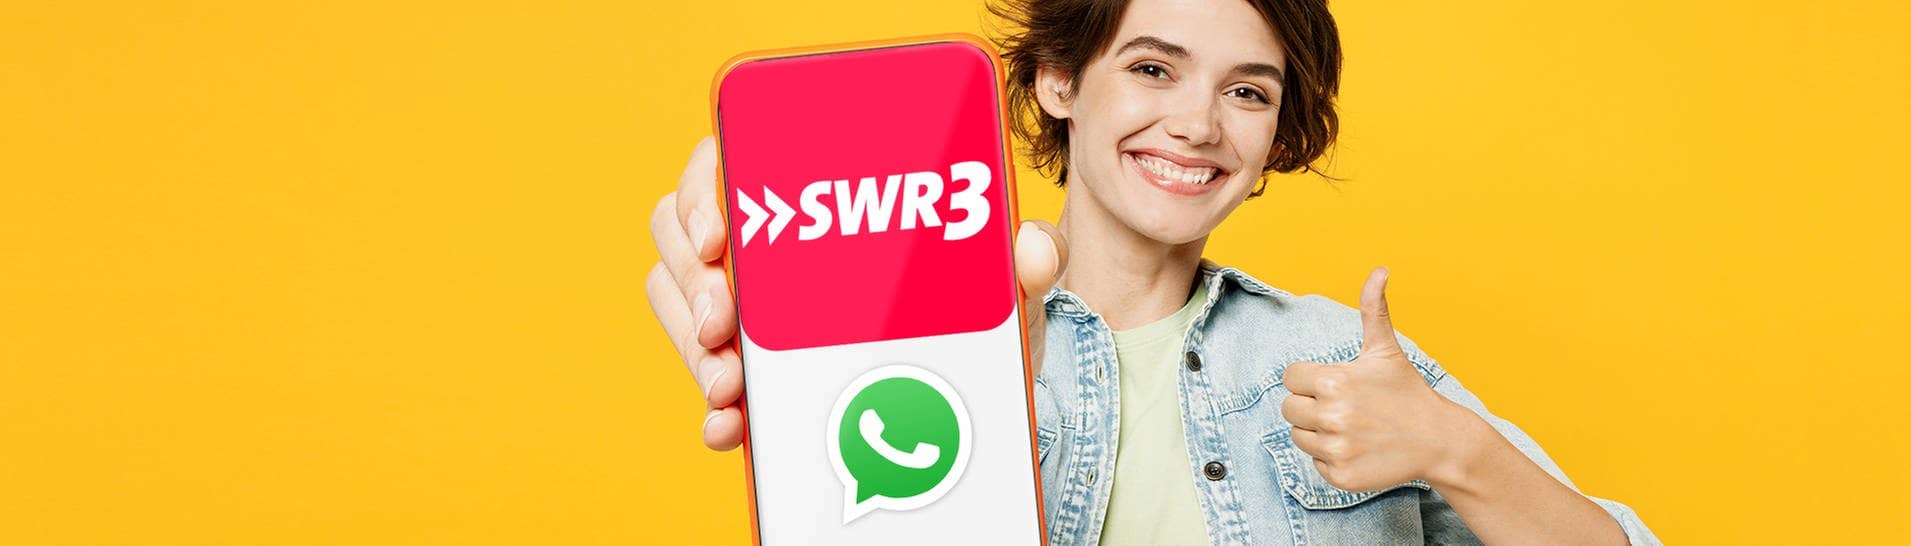 Eine Frau hält ein Smartphone mit dem Display nach vorne nach oben. Da SWR3 nun einen Whatsapp-Kanal hat, sind darauf die beiden Logos zu sehen. (Foto: Adobe Stock, ViDi Studio)